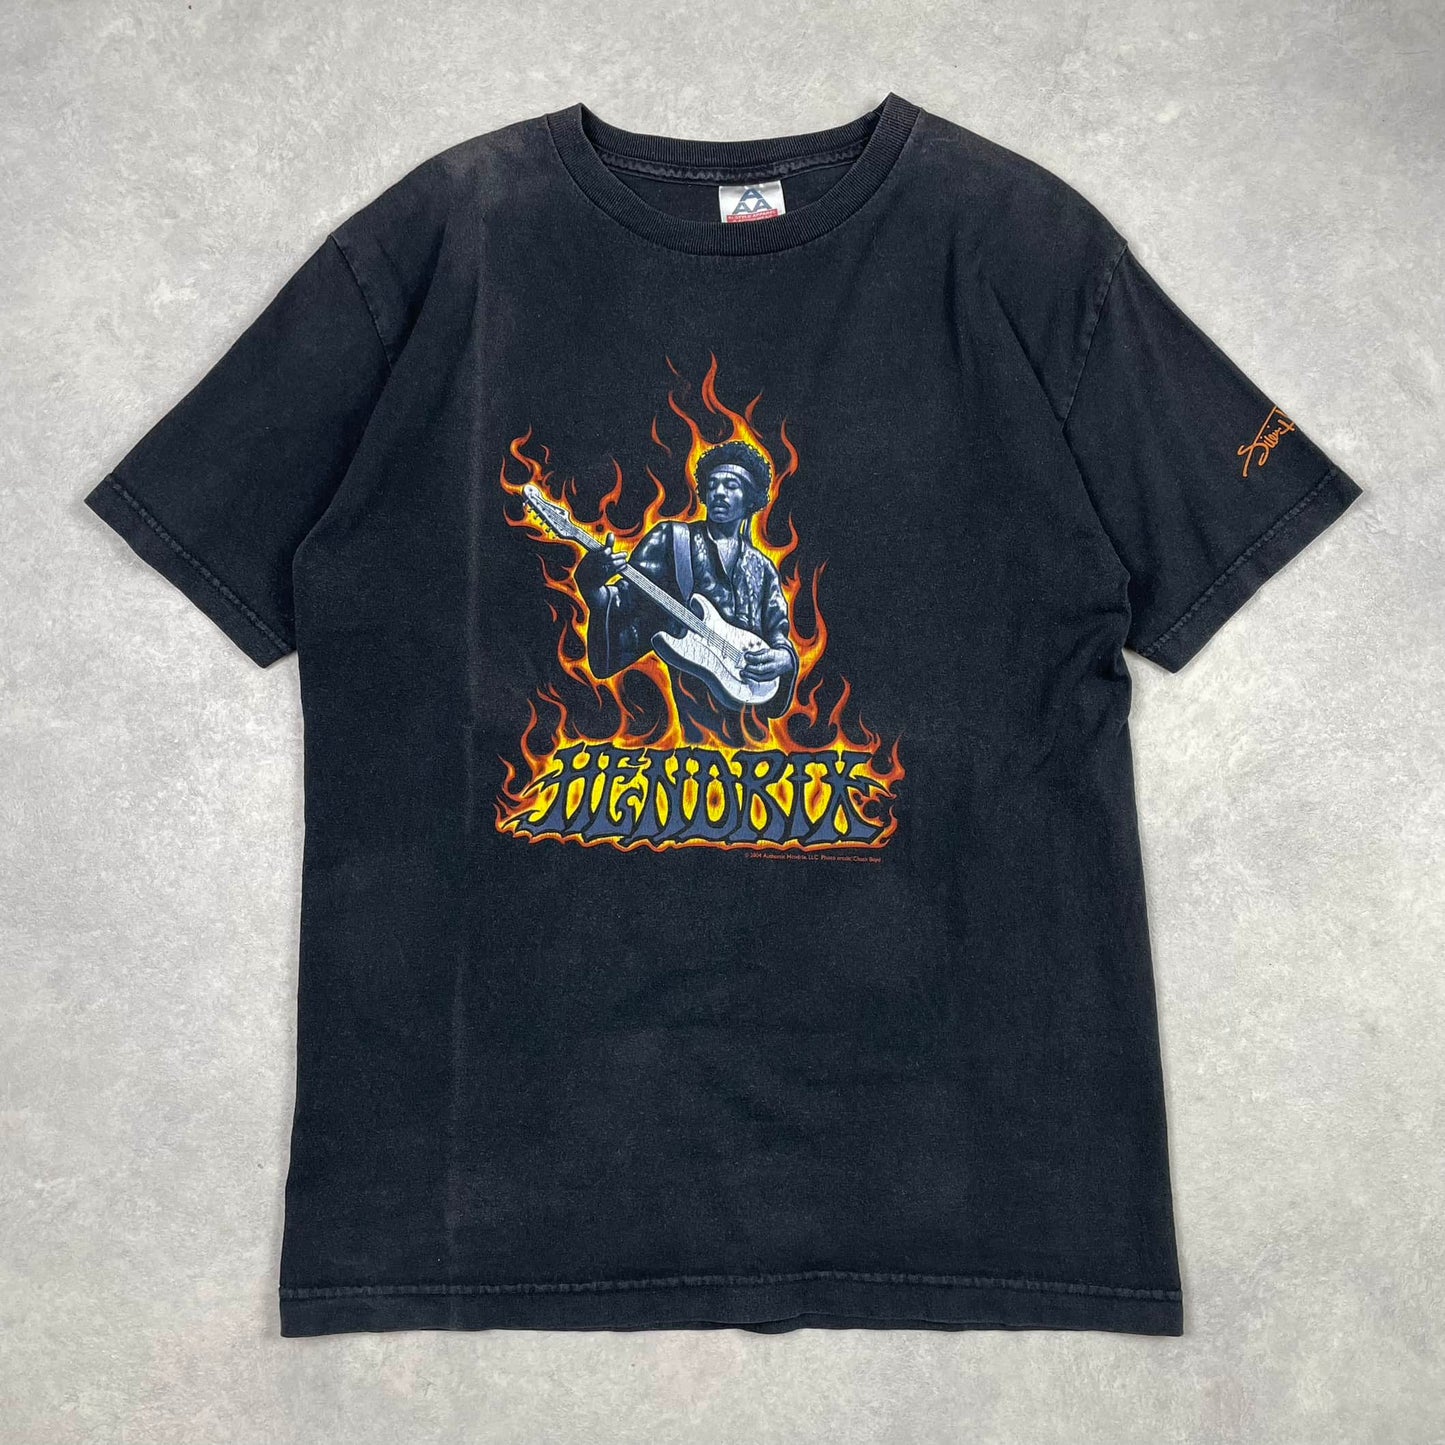 Vintage T-Shirt Jimi Hendrix Black 2004